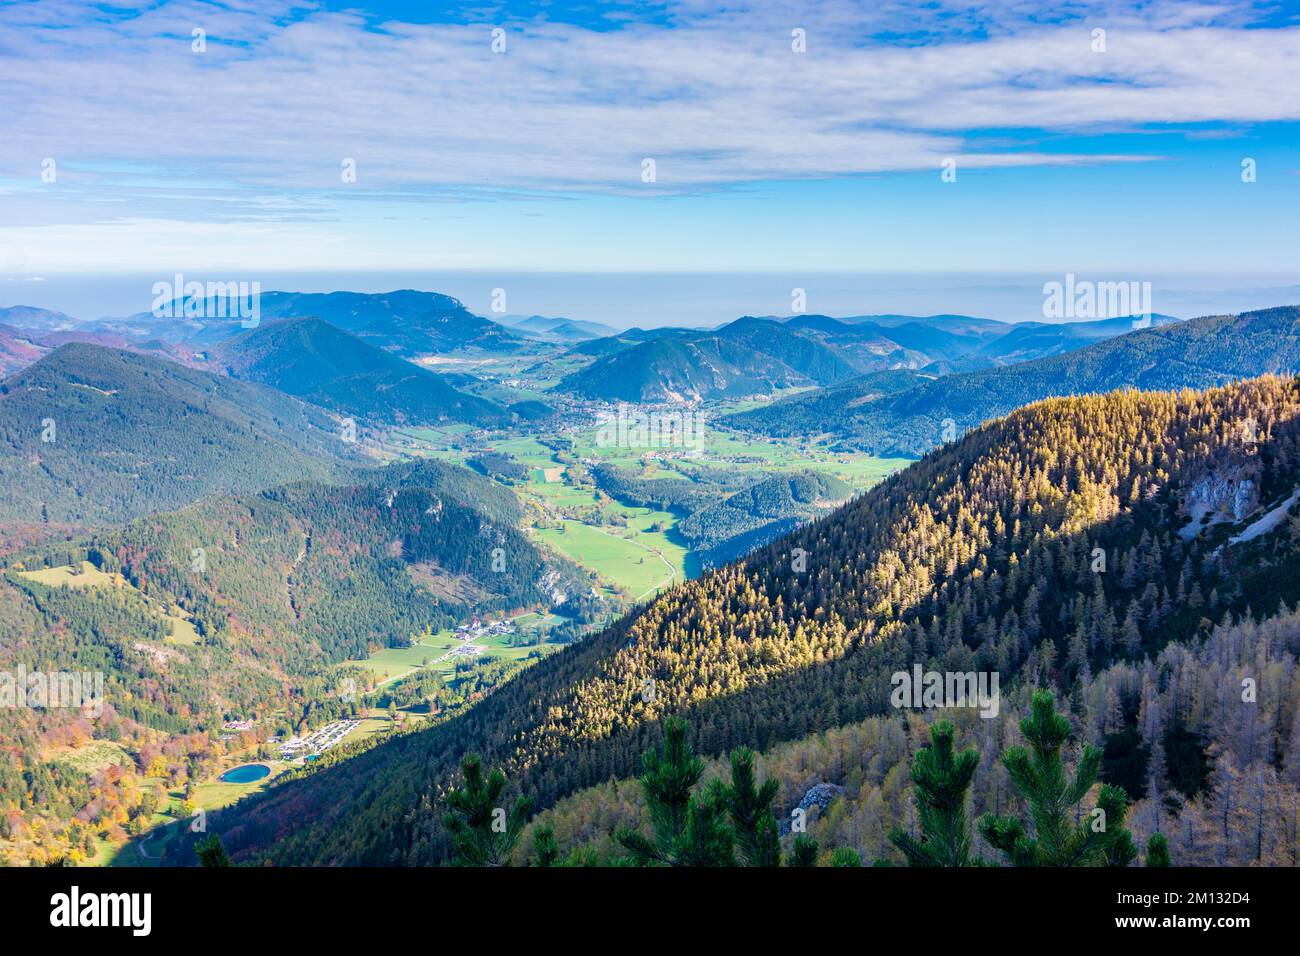 Puchberg am Schneeberg, view to Puchberg am Schneeberg, from mountain Schneeberg in Vienna Alps (Wiener Alpen), Lower Austria, Austria Stock Photo